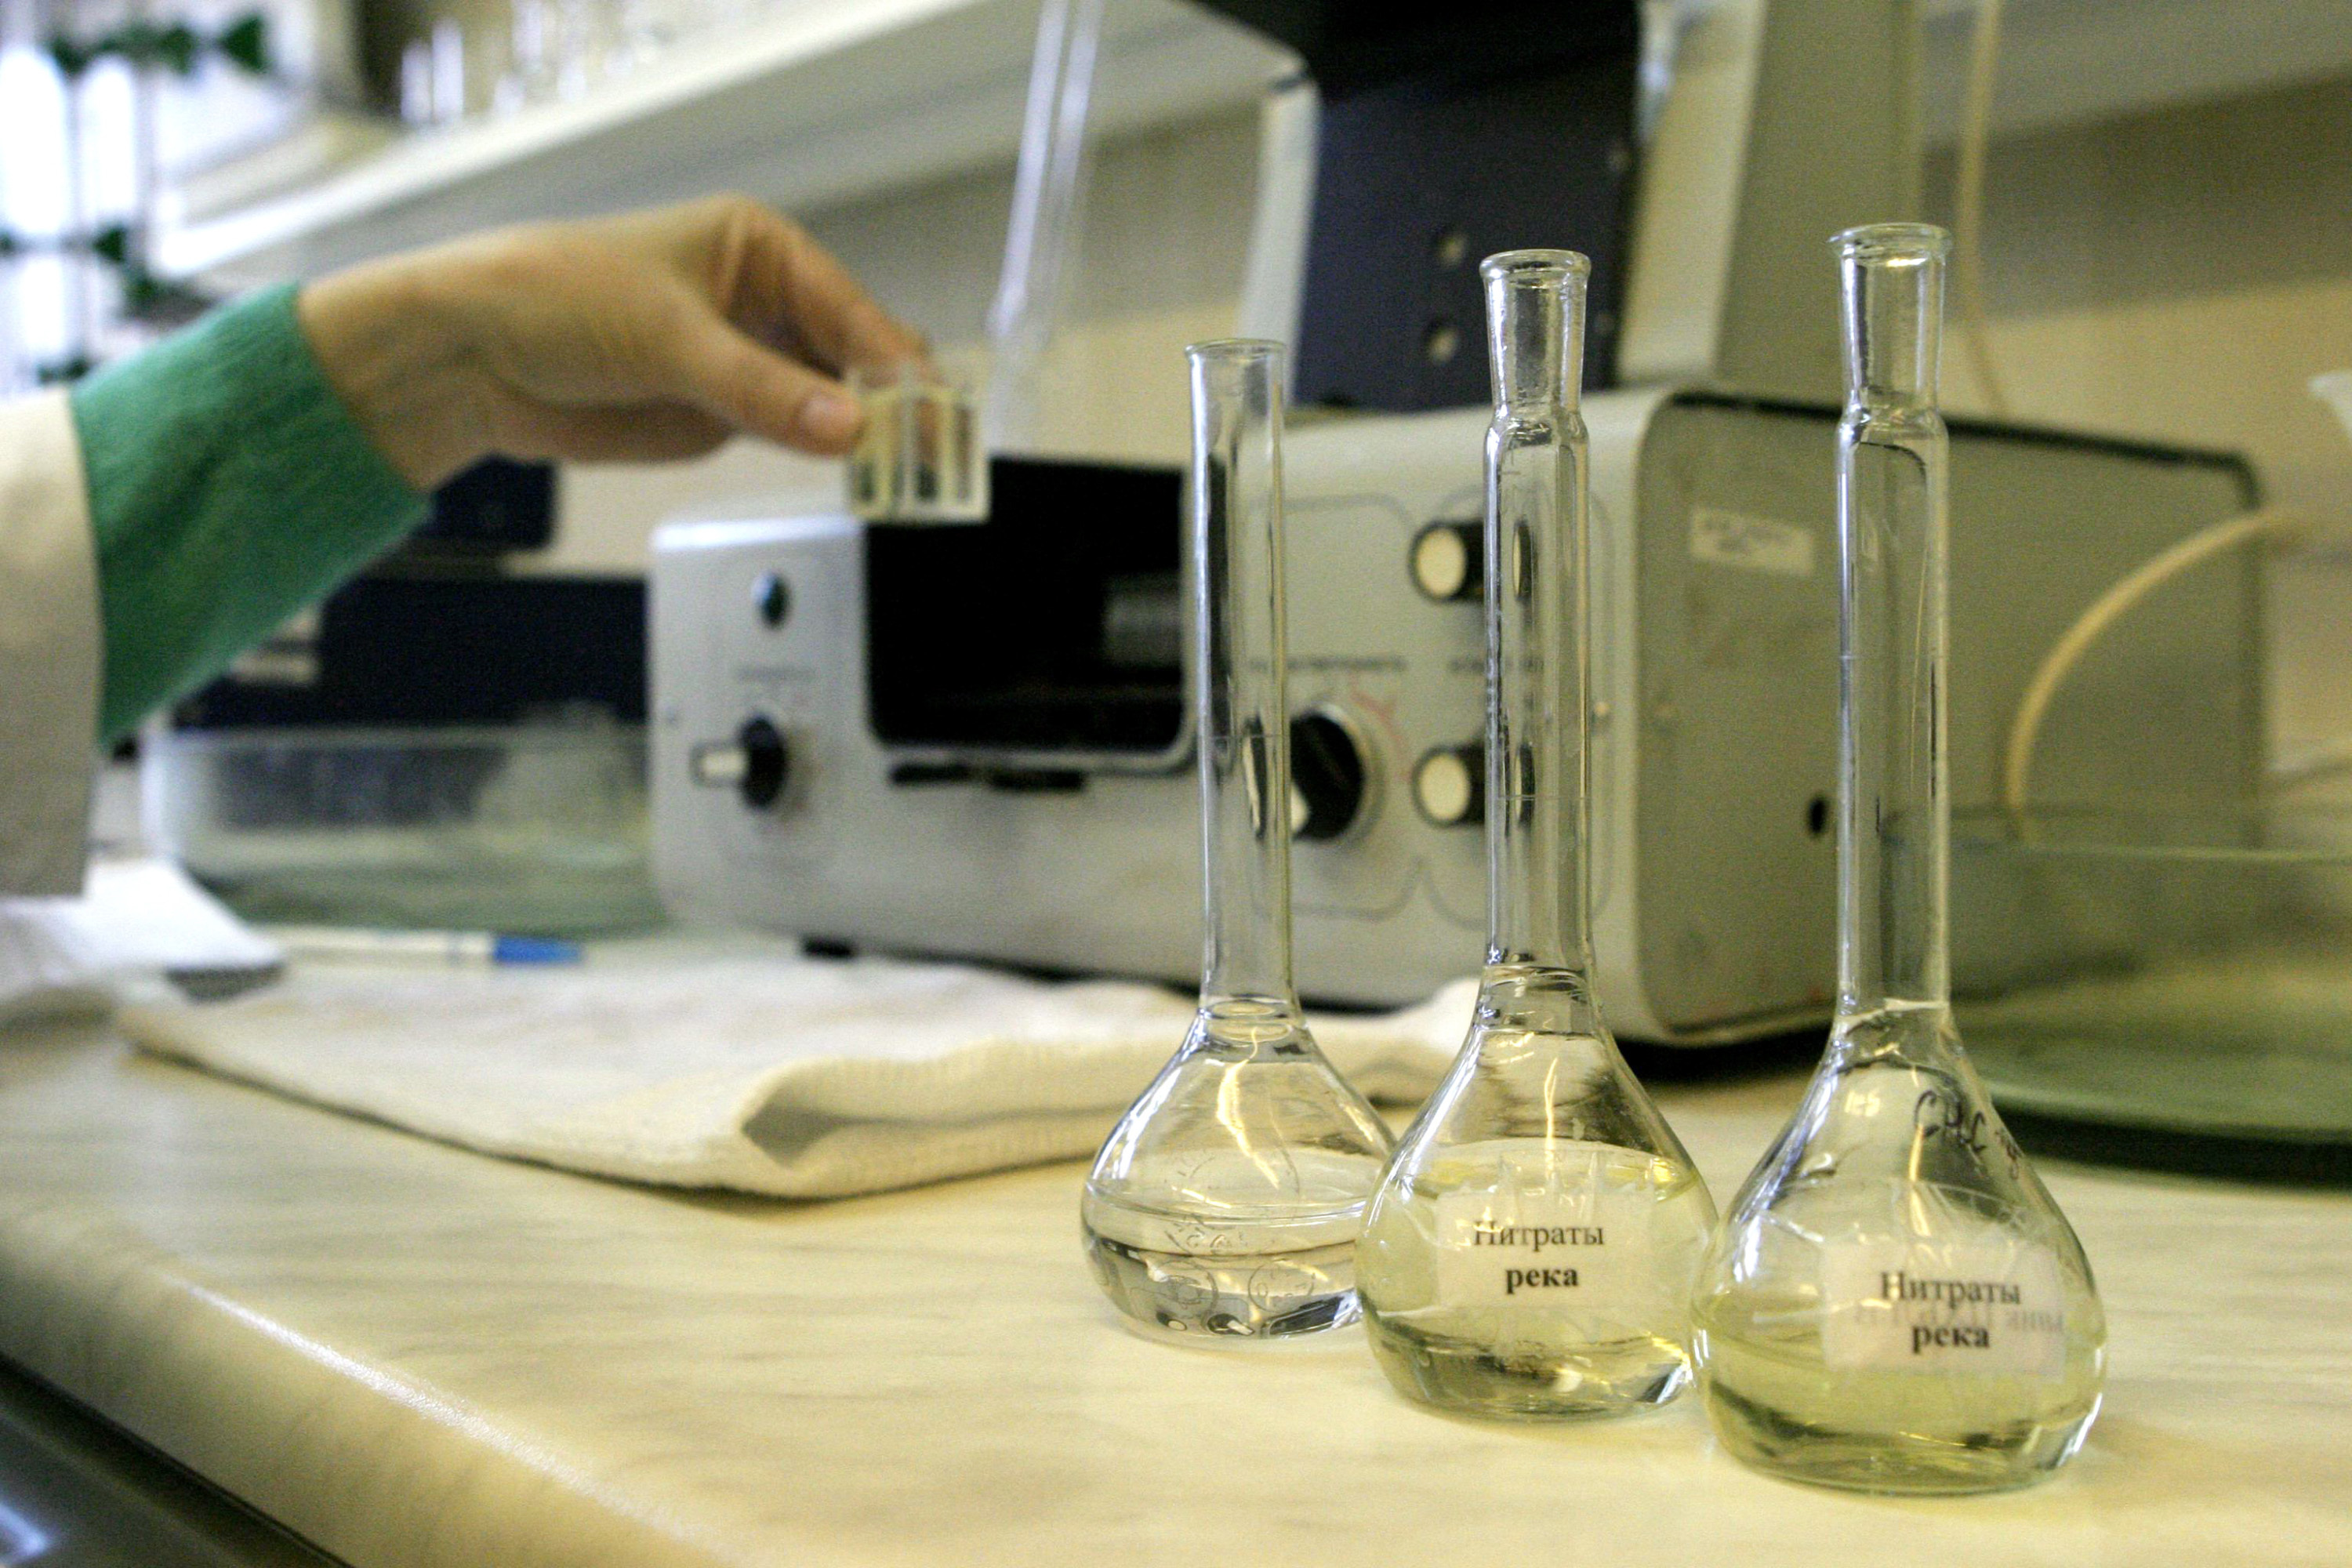 Анализ проб воды лаборатория. Лабораторные исследования воды. Химическое исследование воды. Пробы воды в лаборатории. Исследование воды в лаборатории.